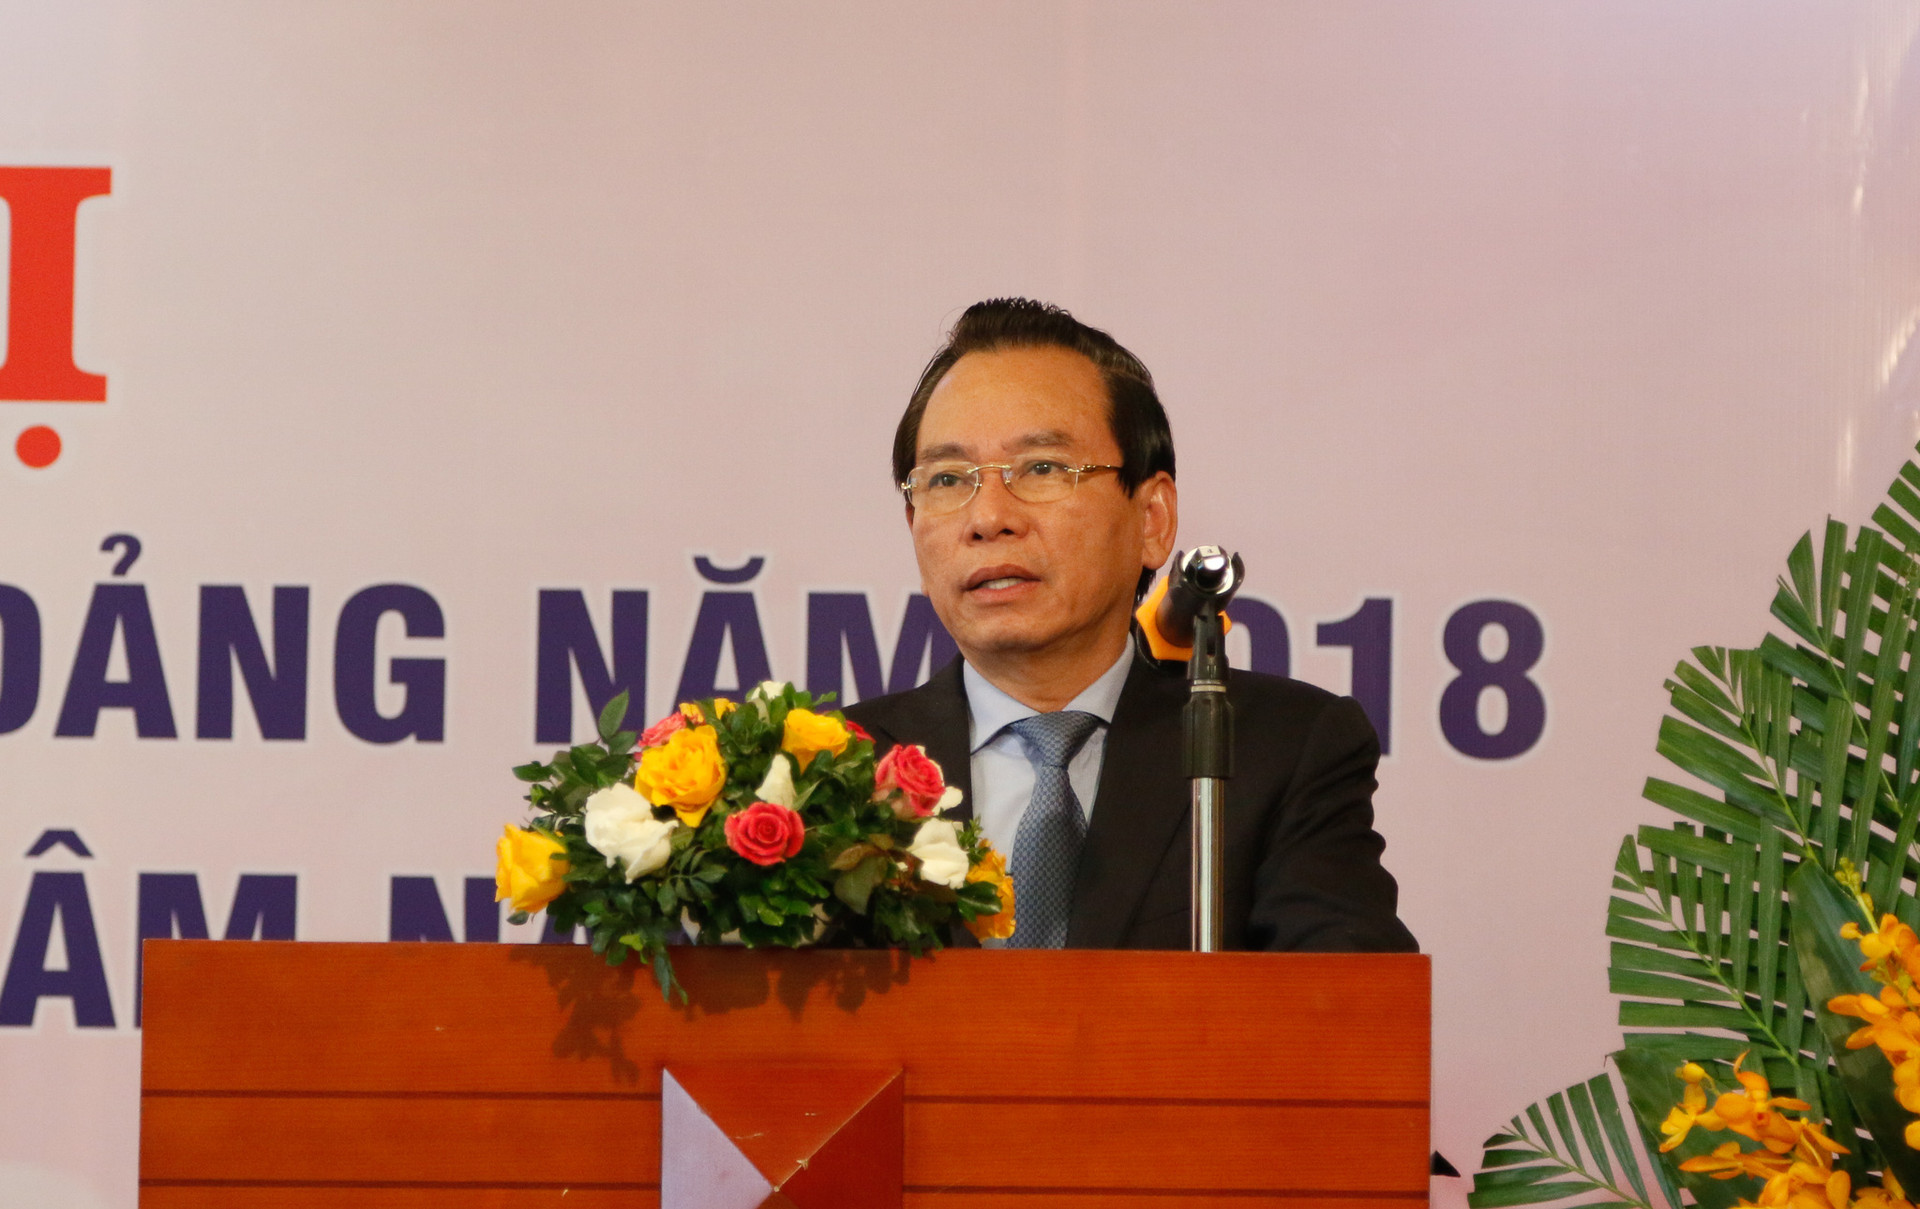 Đảng bộ Khối Doanh nghiệp Hà Nội: Hội nghị tổng kết công tác năm 2018